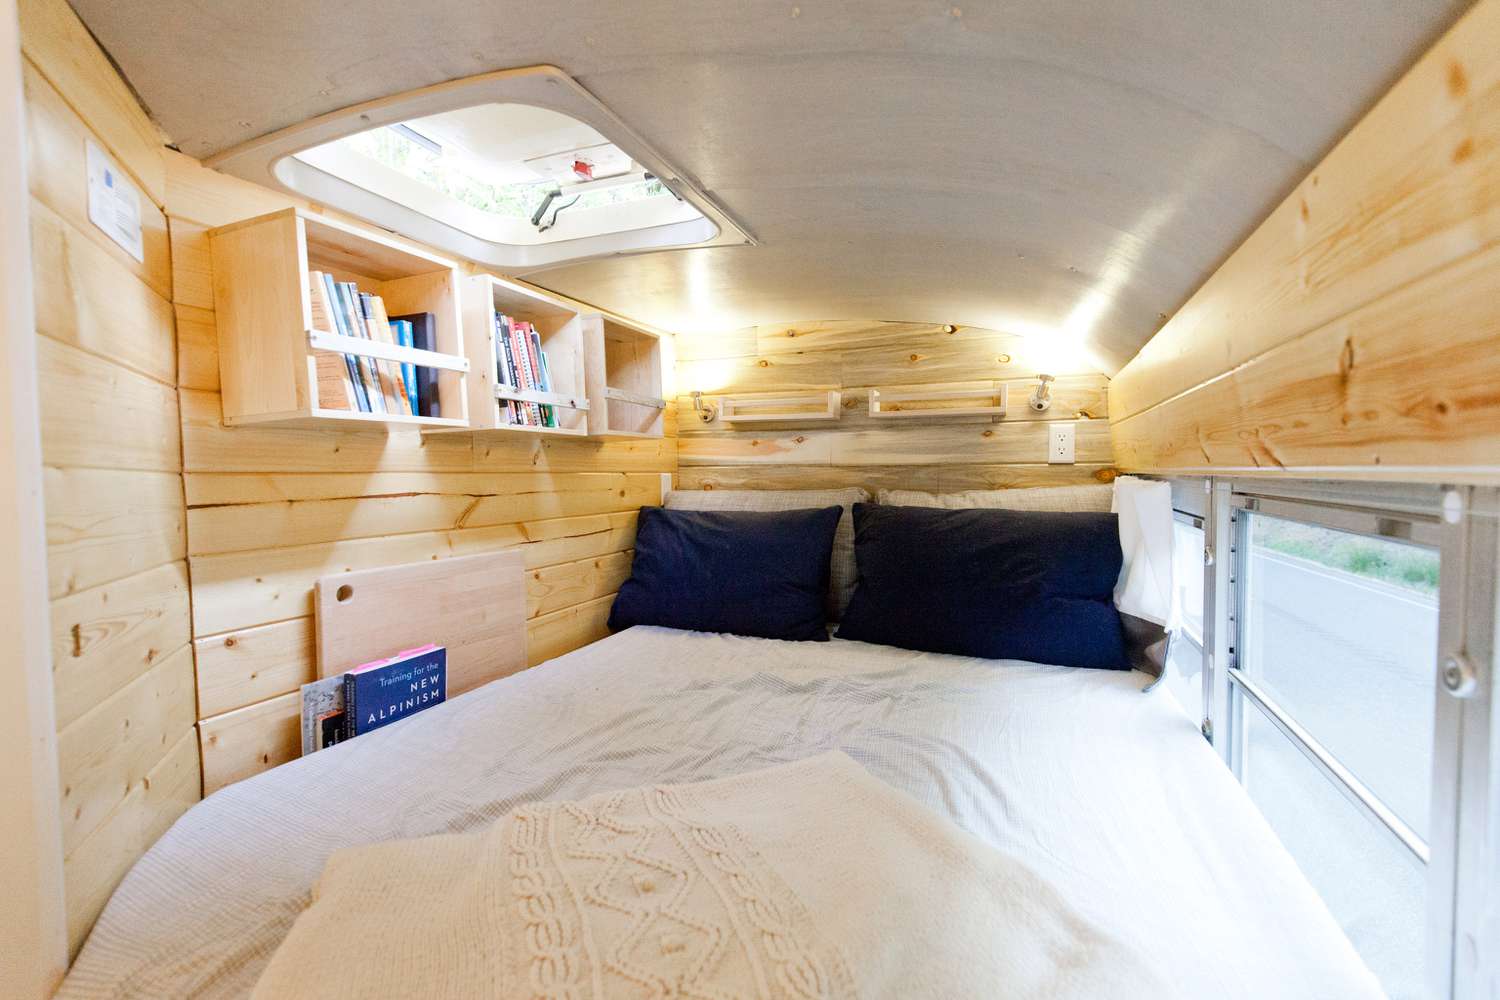 Bus bedroom nook